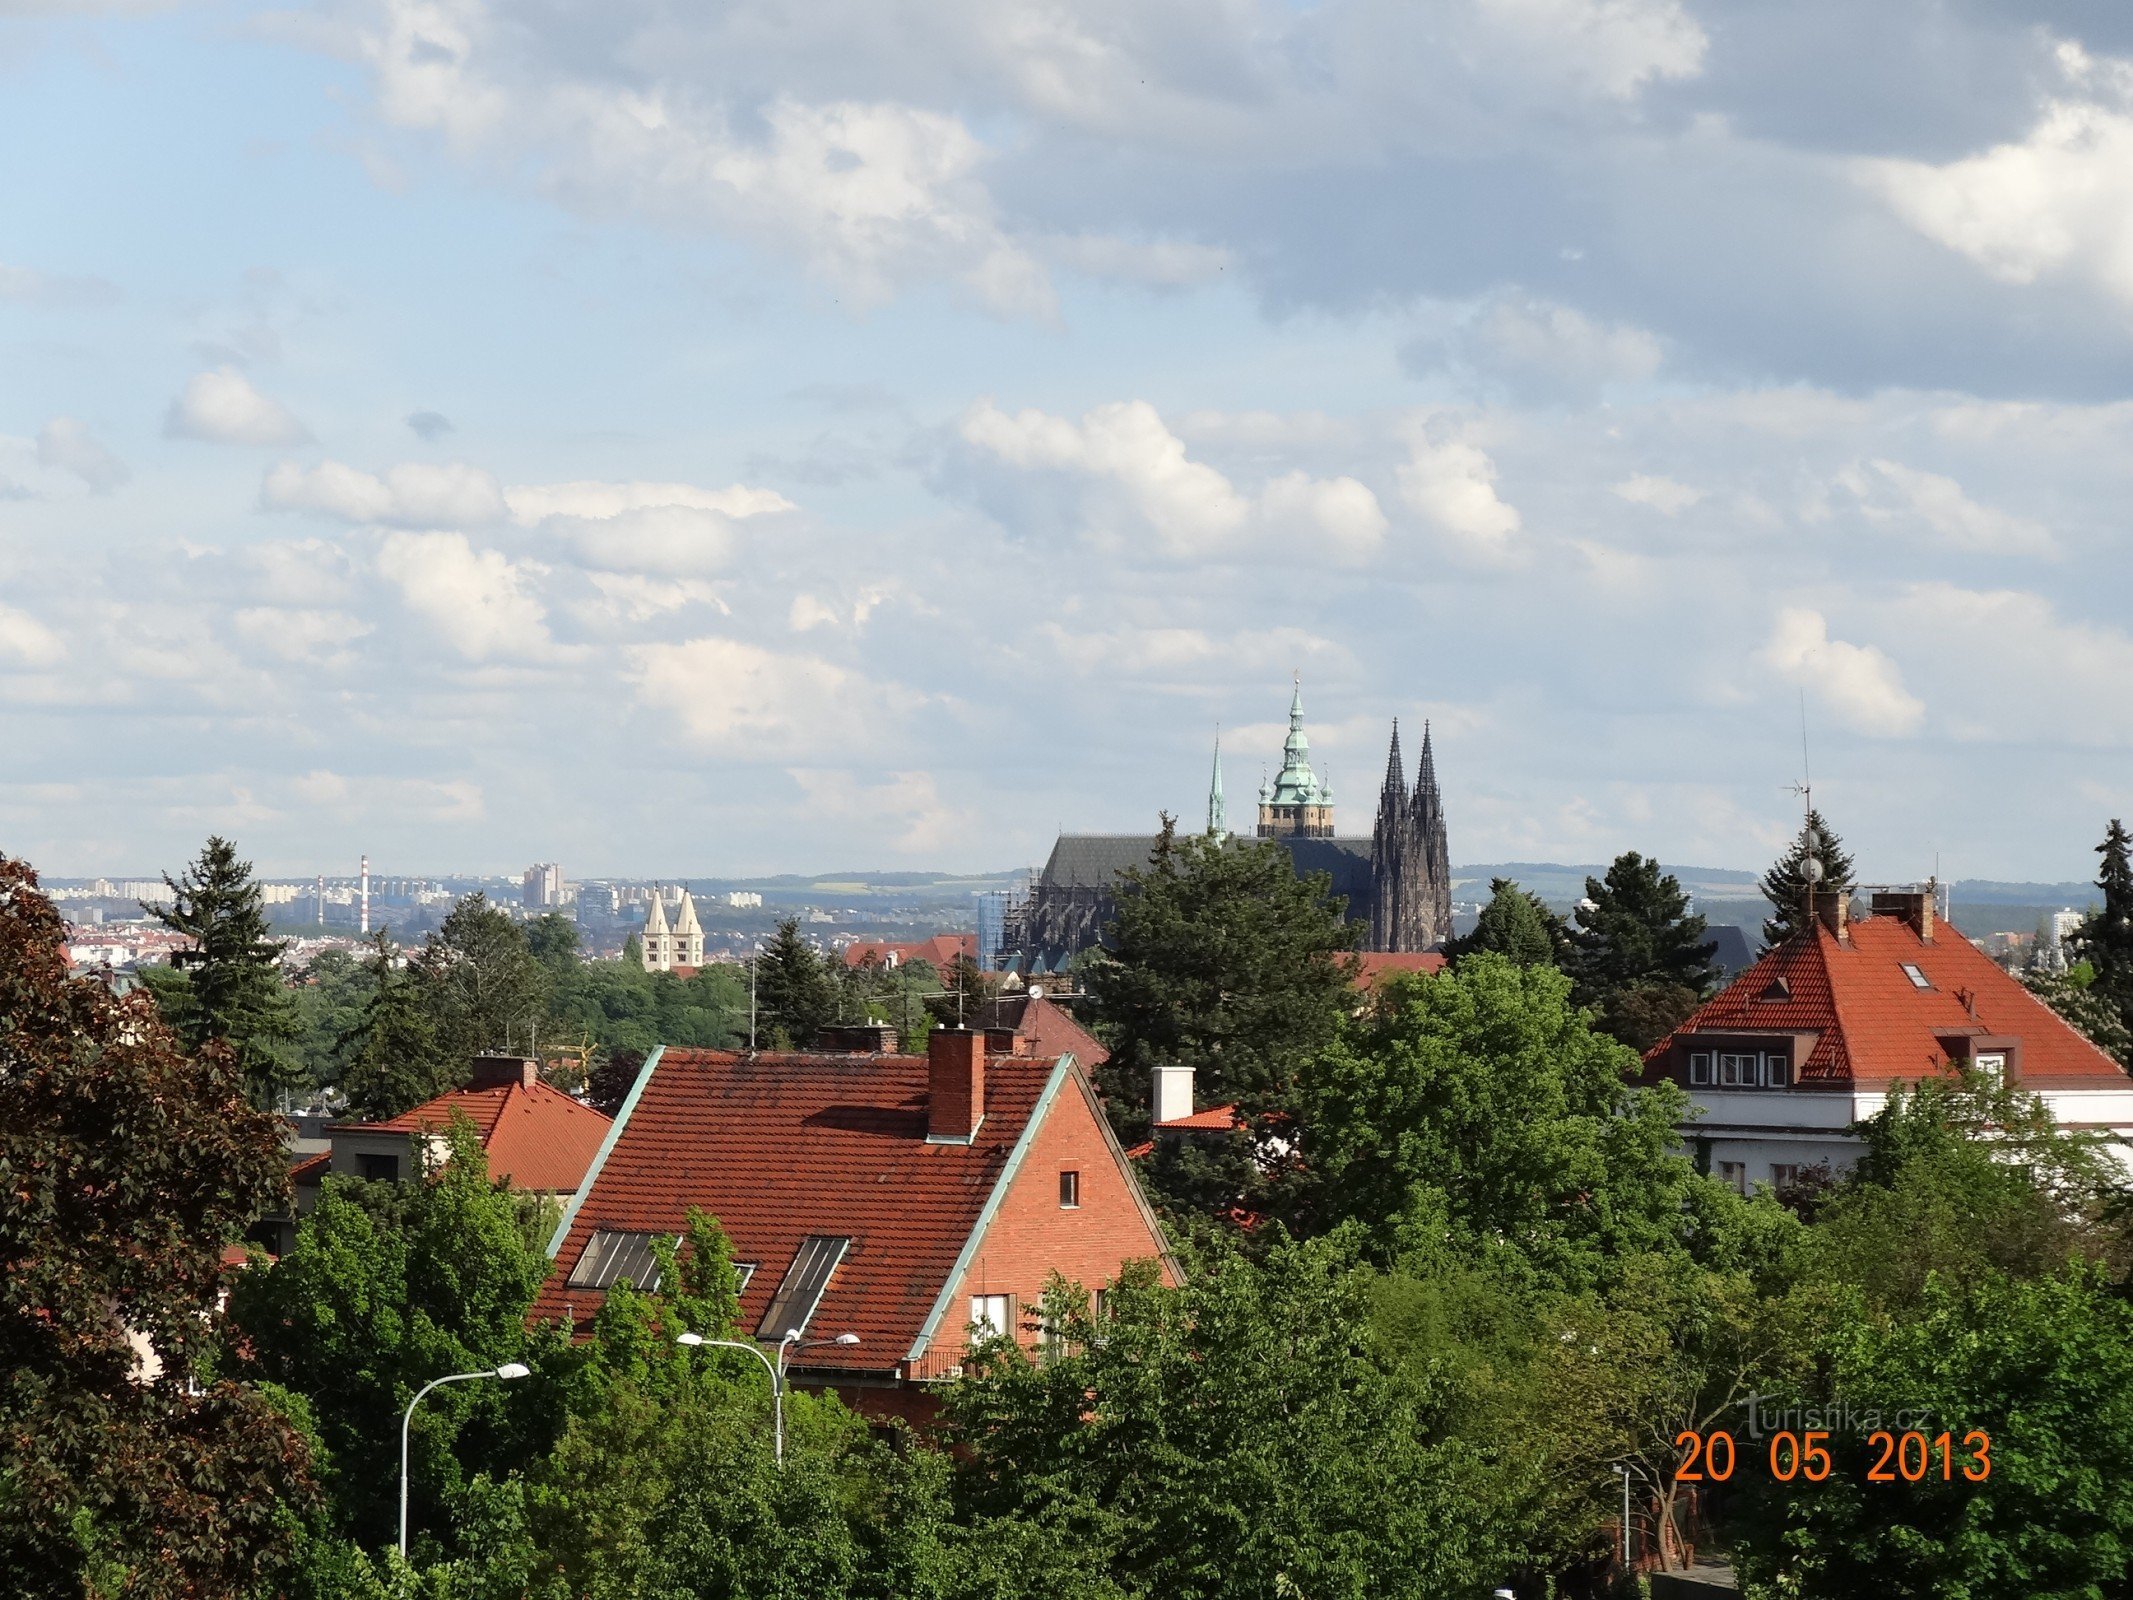 Uitzicht vanaf het Hanspaulka-kasteel naar het kasteel